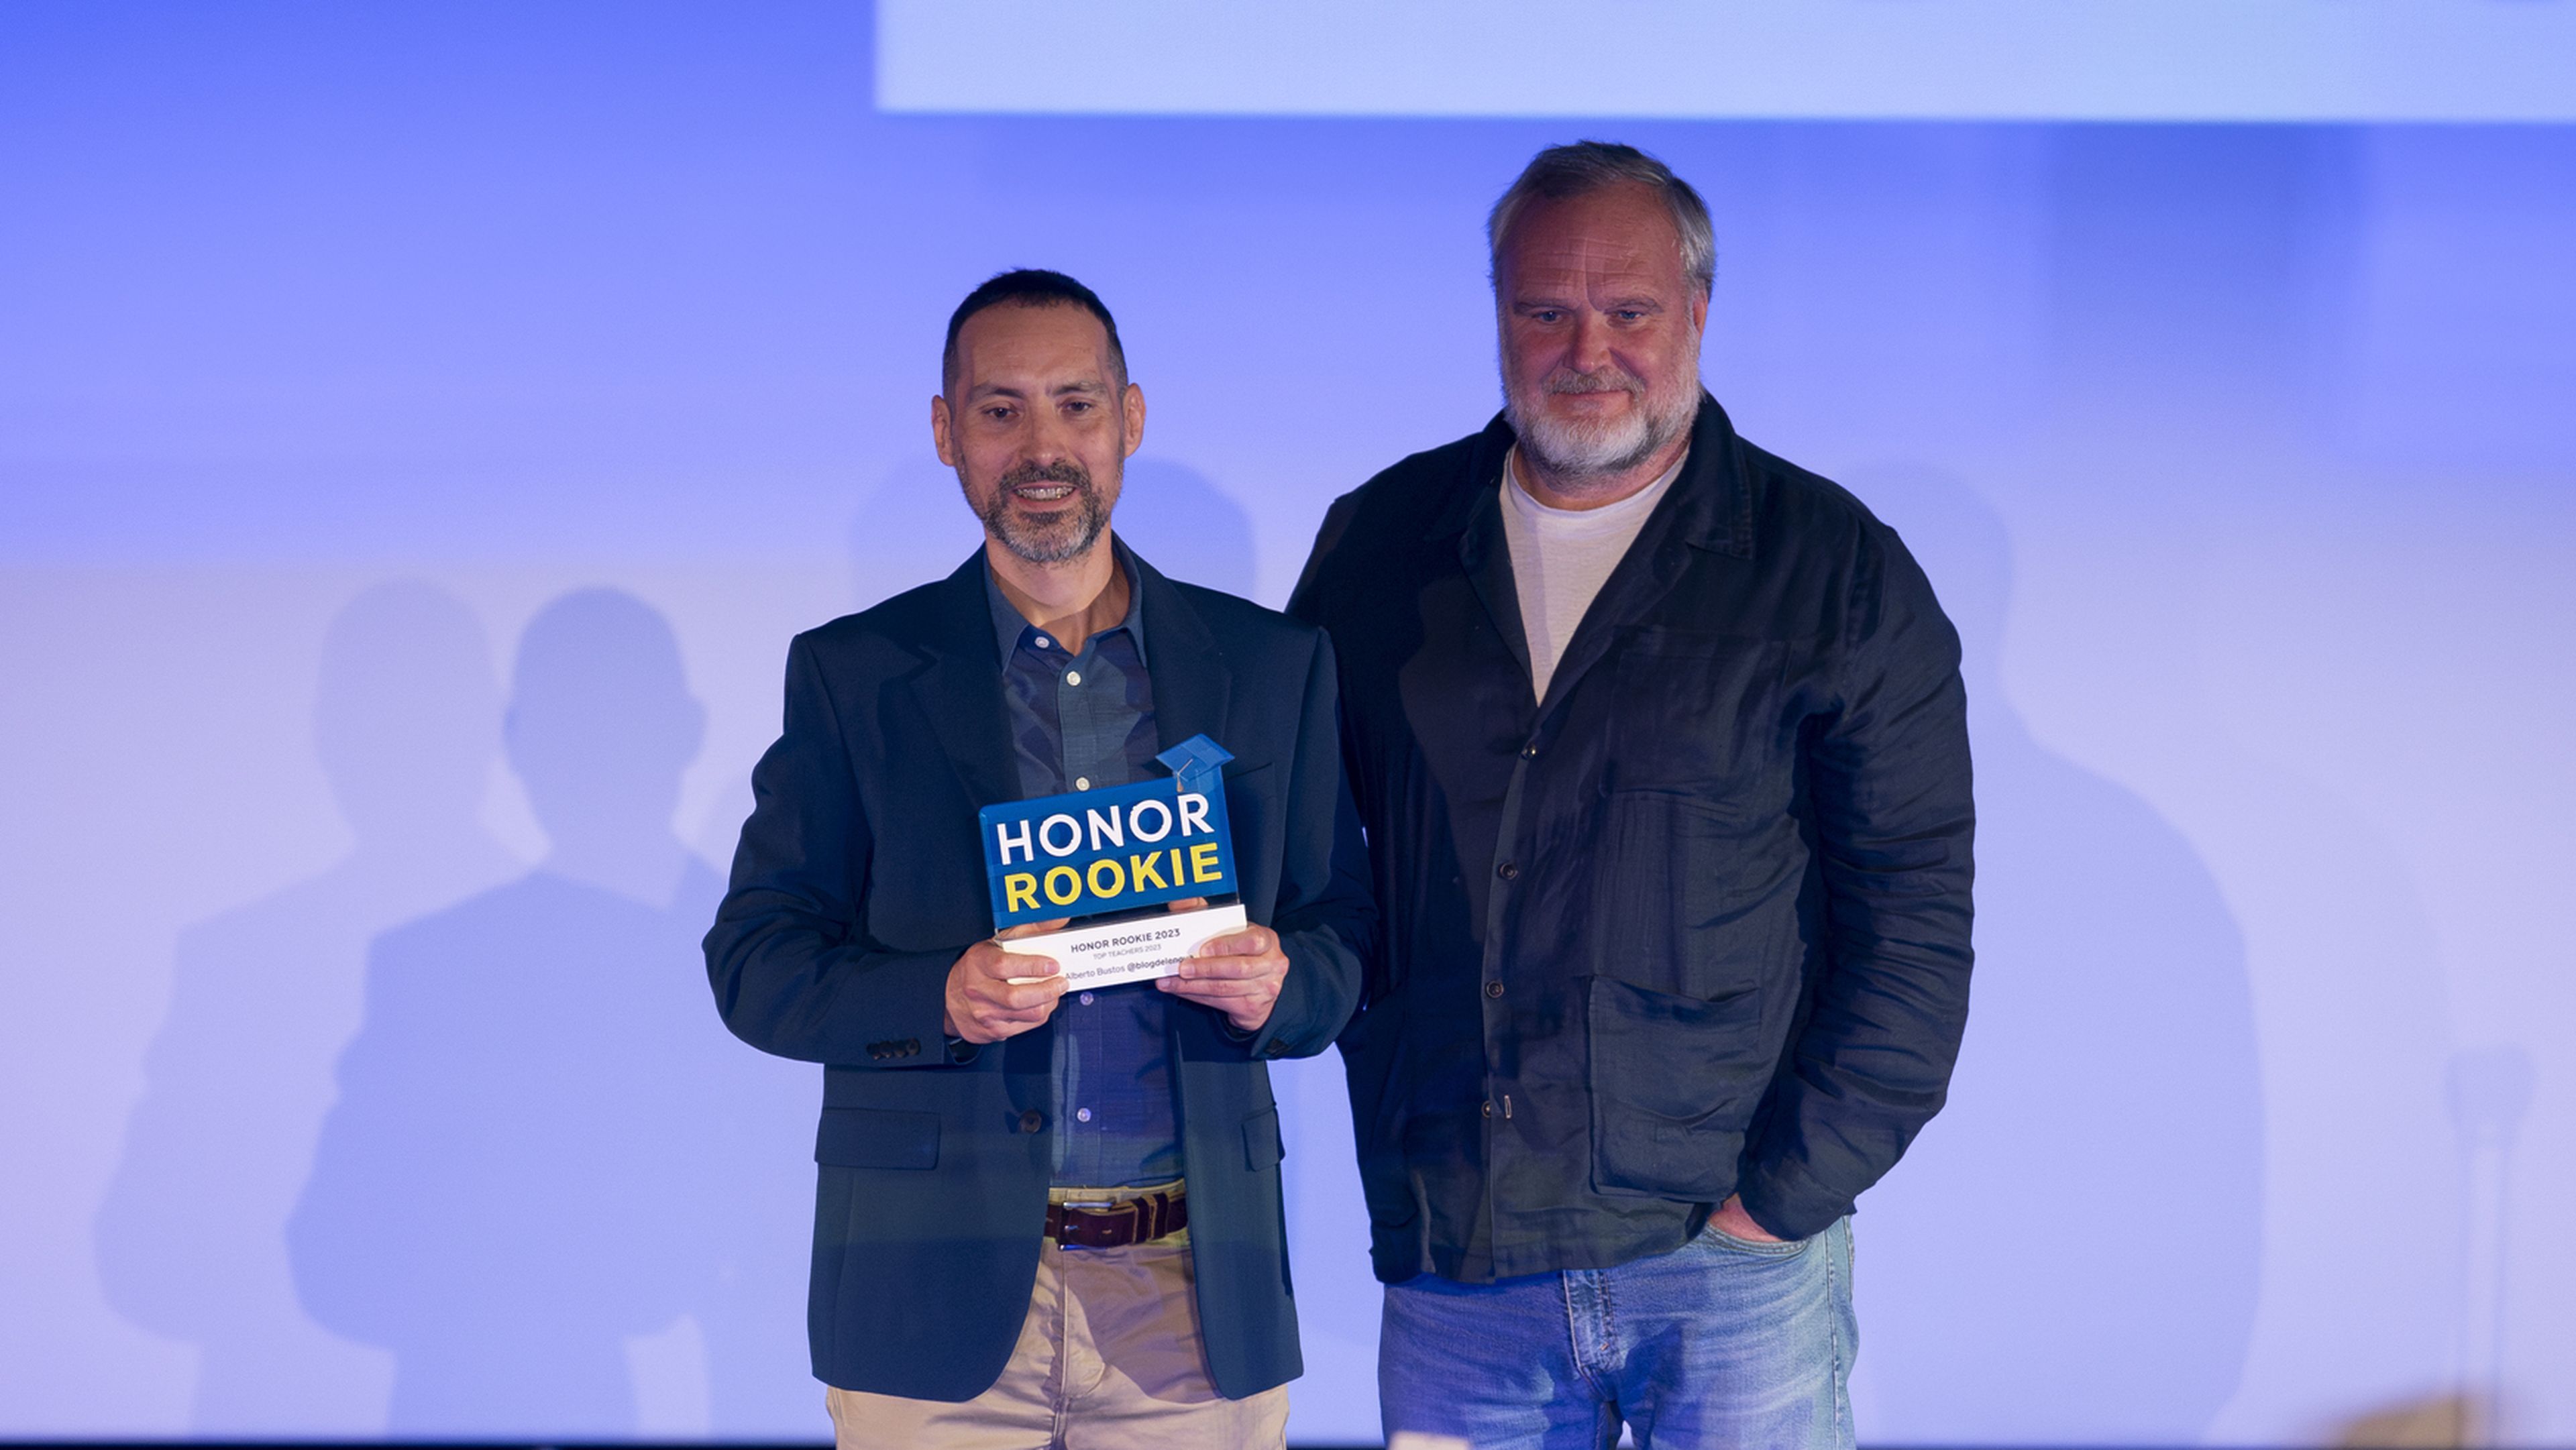 Alberto Bustos recebendo o prêmio com Ramiro Larragán, Diretor de Marketing da HONOR para Espanha e Portugal.